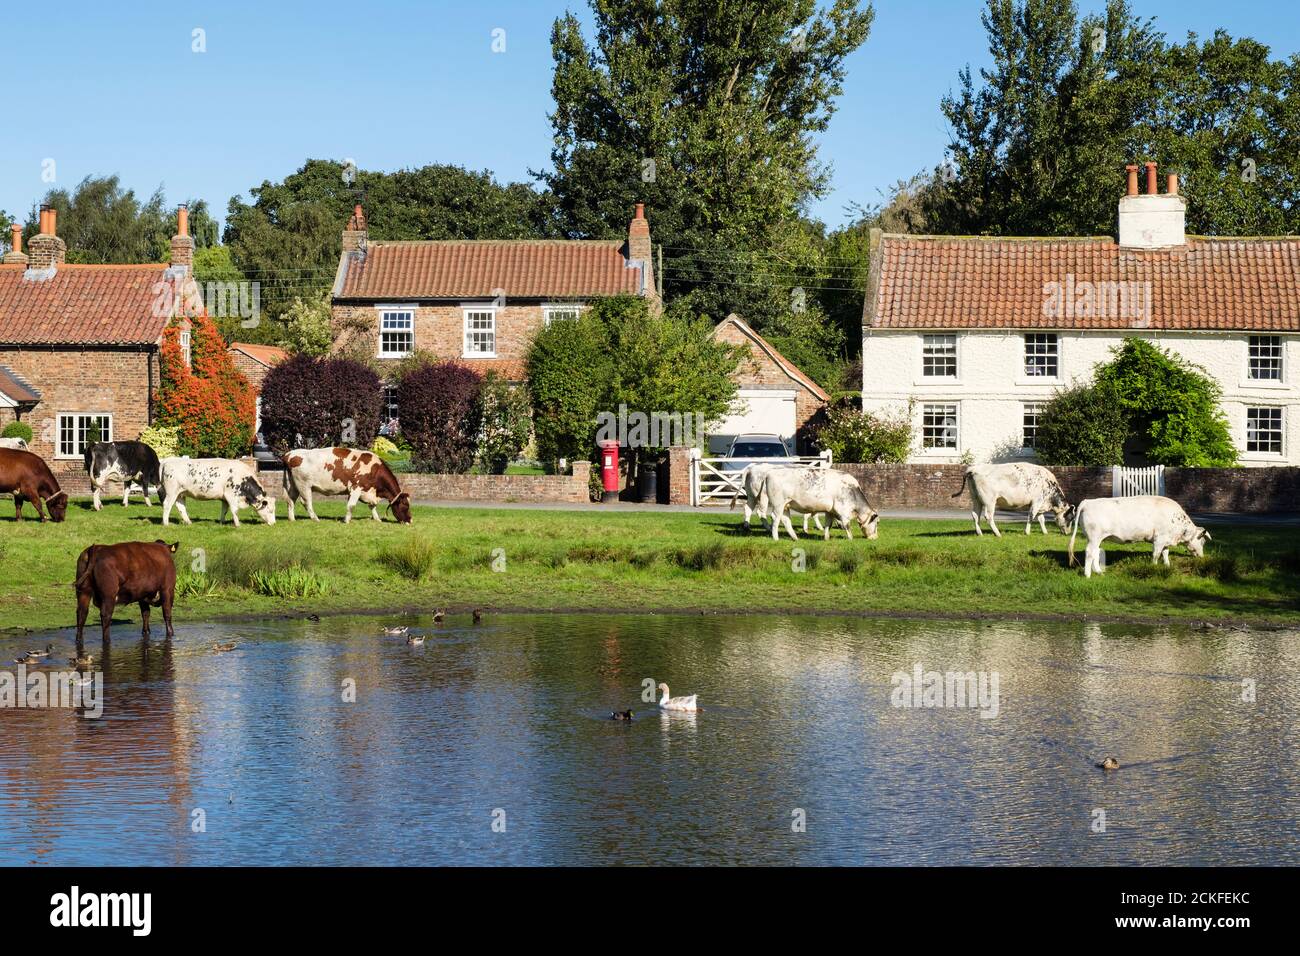 Scène rurale avec bétail de gamme libre paître par un étang de canard sur un village anglais de campagne vert. Nun Monkton York North Yorkshire Angleterre Royaume-Uni Banque D'Images